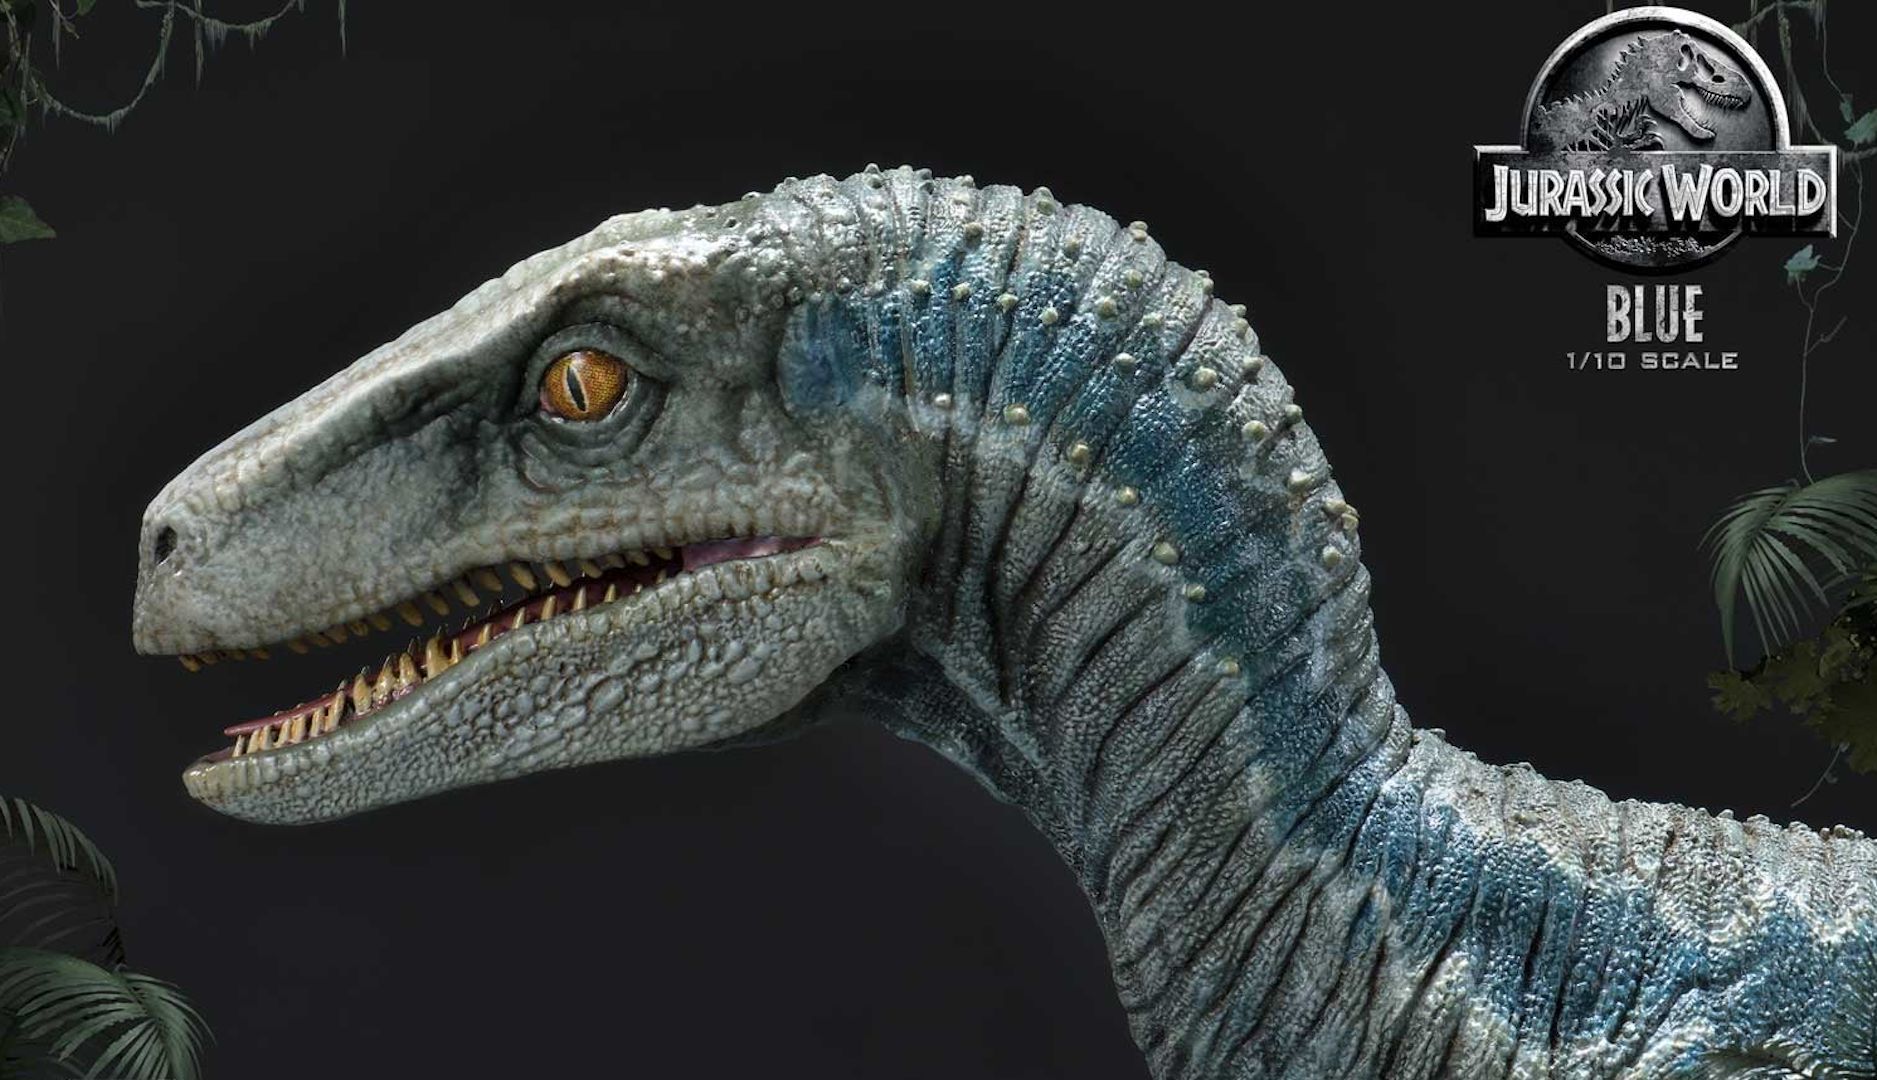 Jurassic World: Blue se hace 'real' en la nueva estatua de Prime 1 Studio -  Vandal Random